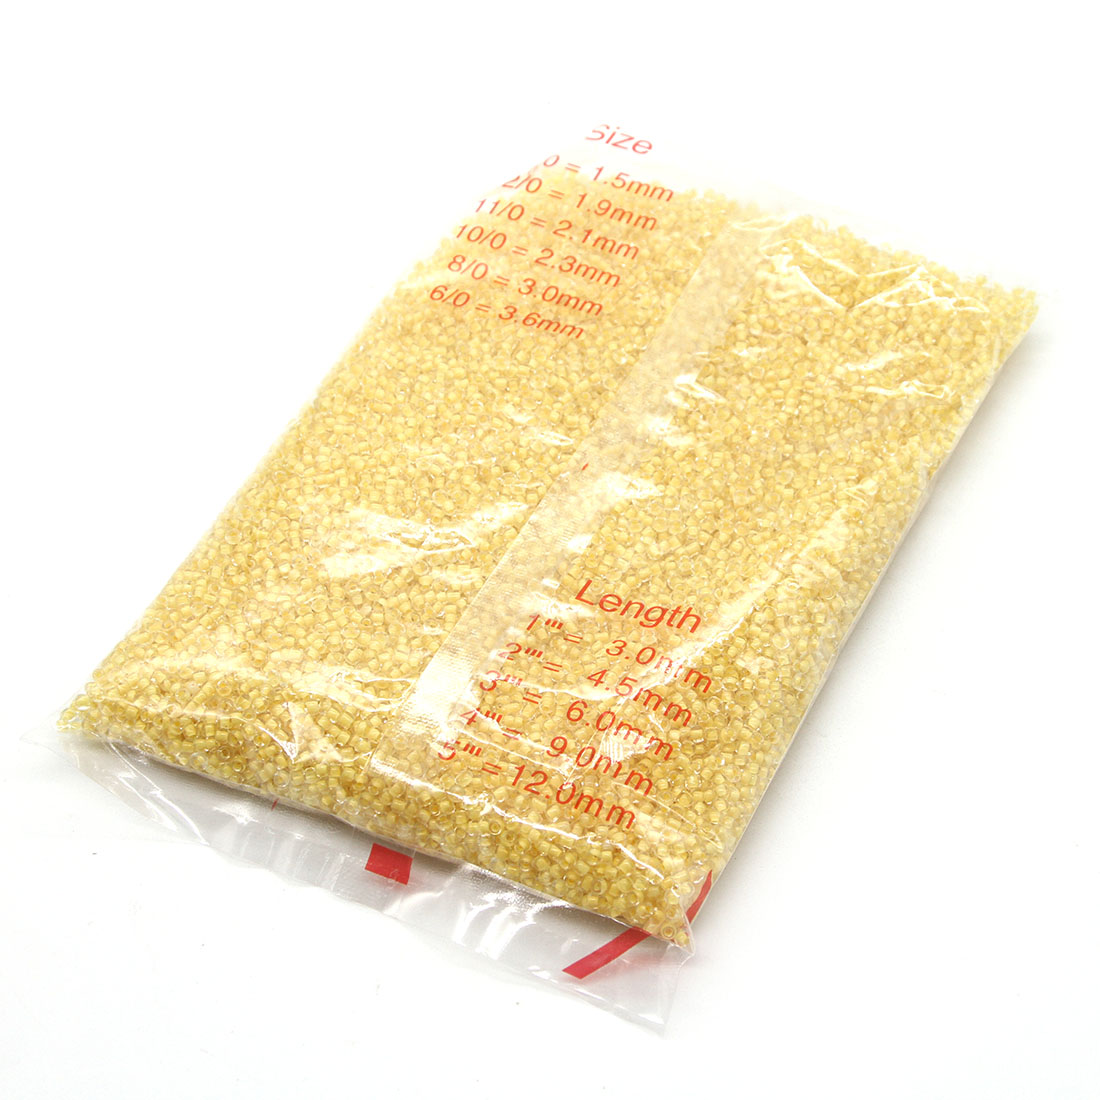 Lemon yellow 3mm 10,000 packs